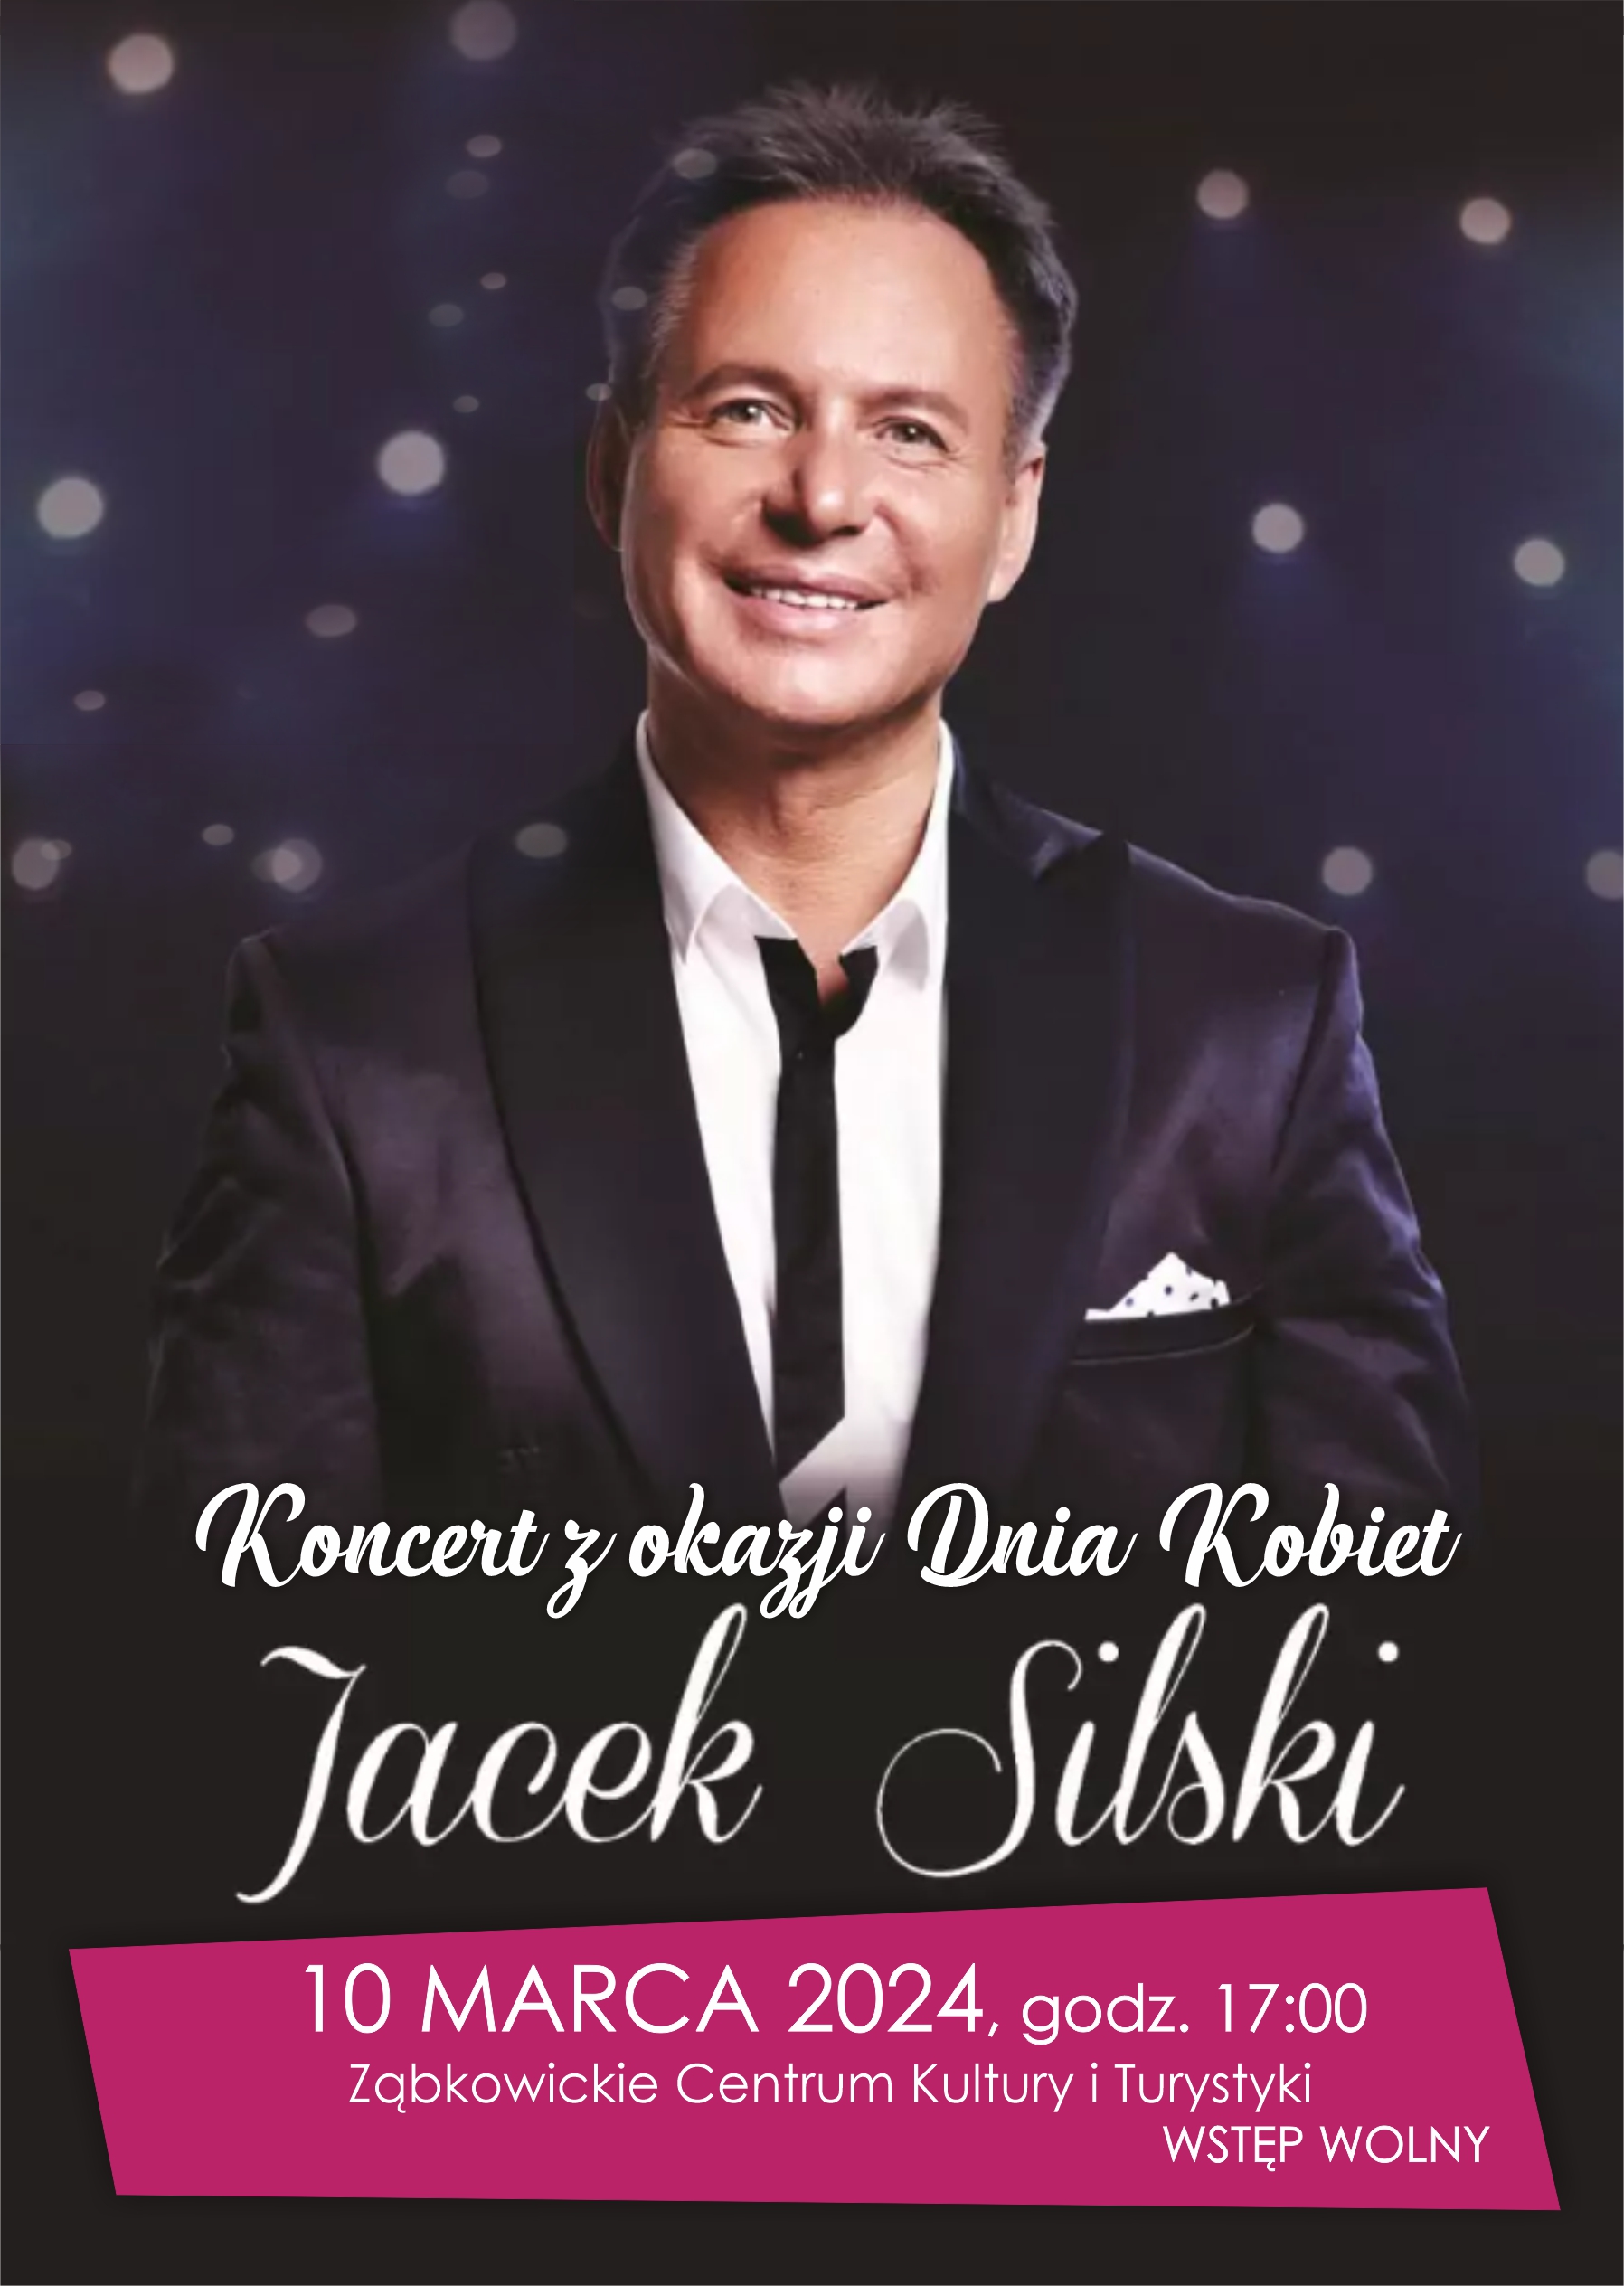 Plakat informacyjny koncertu Jacka Silskiego z okazji Dnia Kobiet 10 marca 2024 o godzinie 17:00 w Ząbkowickim Centrum Kultury i Turystyki.